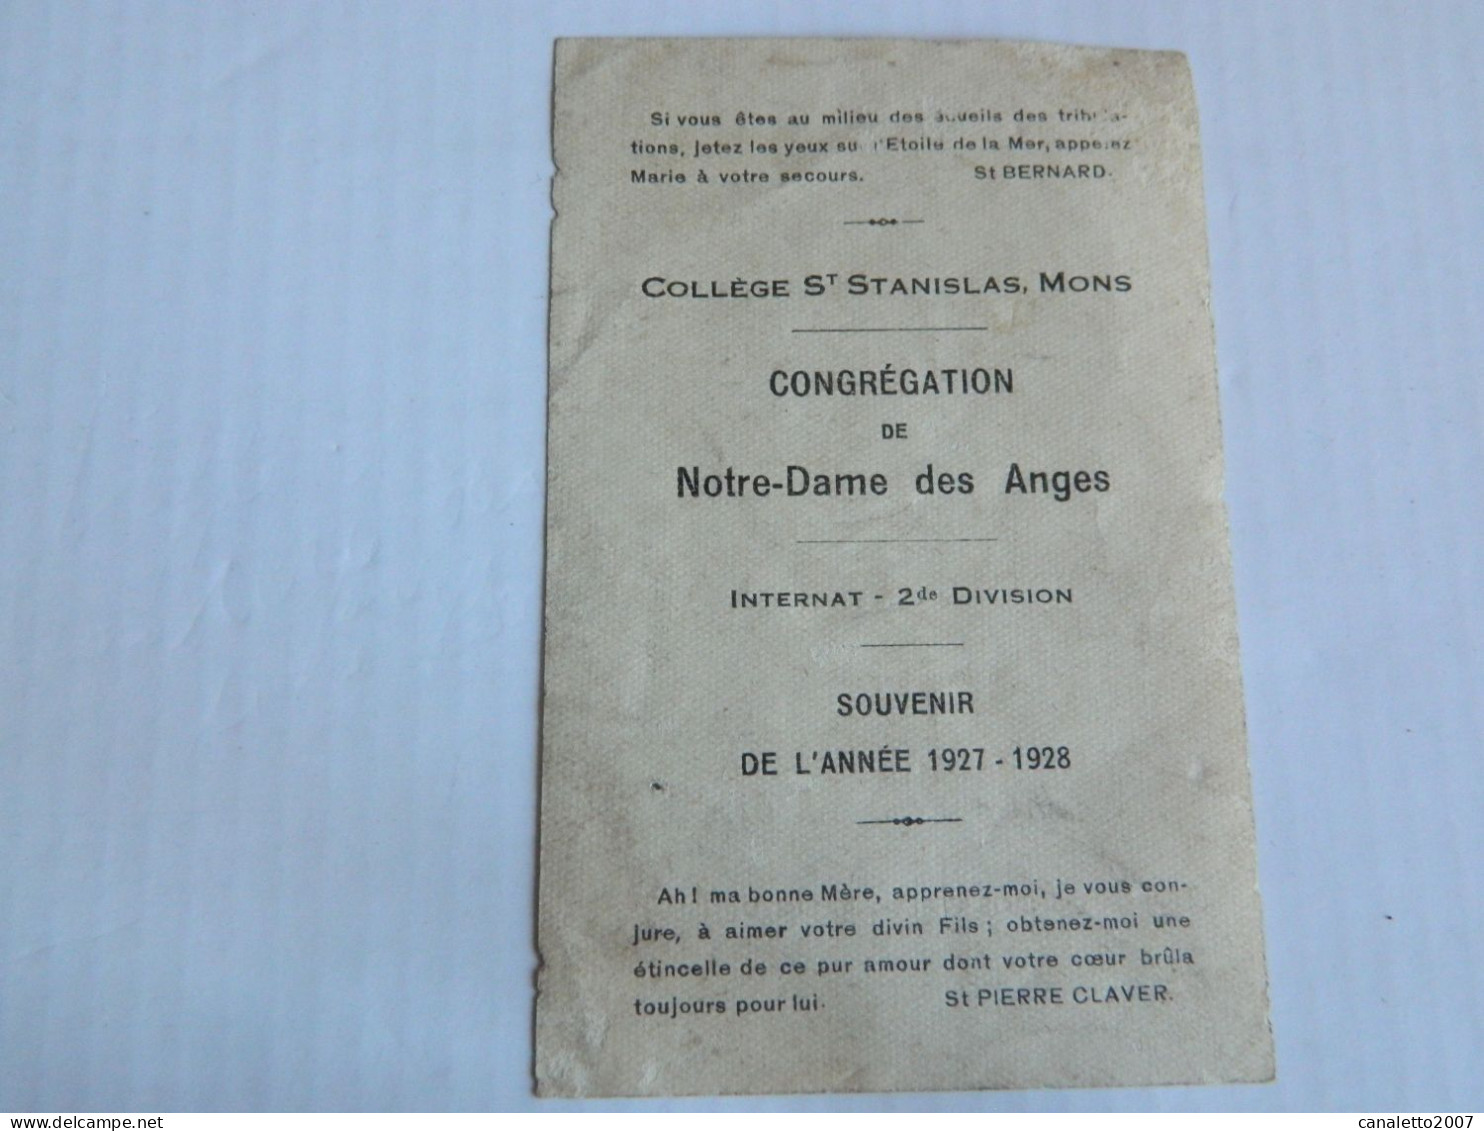 MONS: COLLEGE ST STANISLAS CONGREGATION DE N-D DES ANGES INTERNAT 2 ME DIVISION SOUVENIR DE L'ANNEE 1927/1928 - Images Religieuses